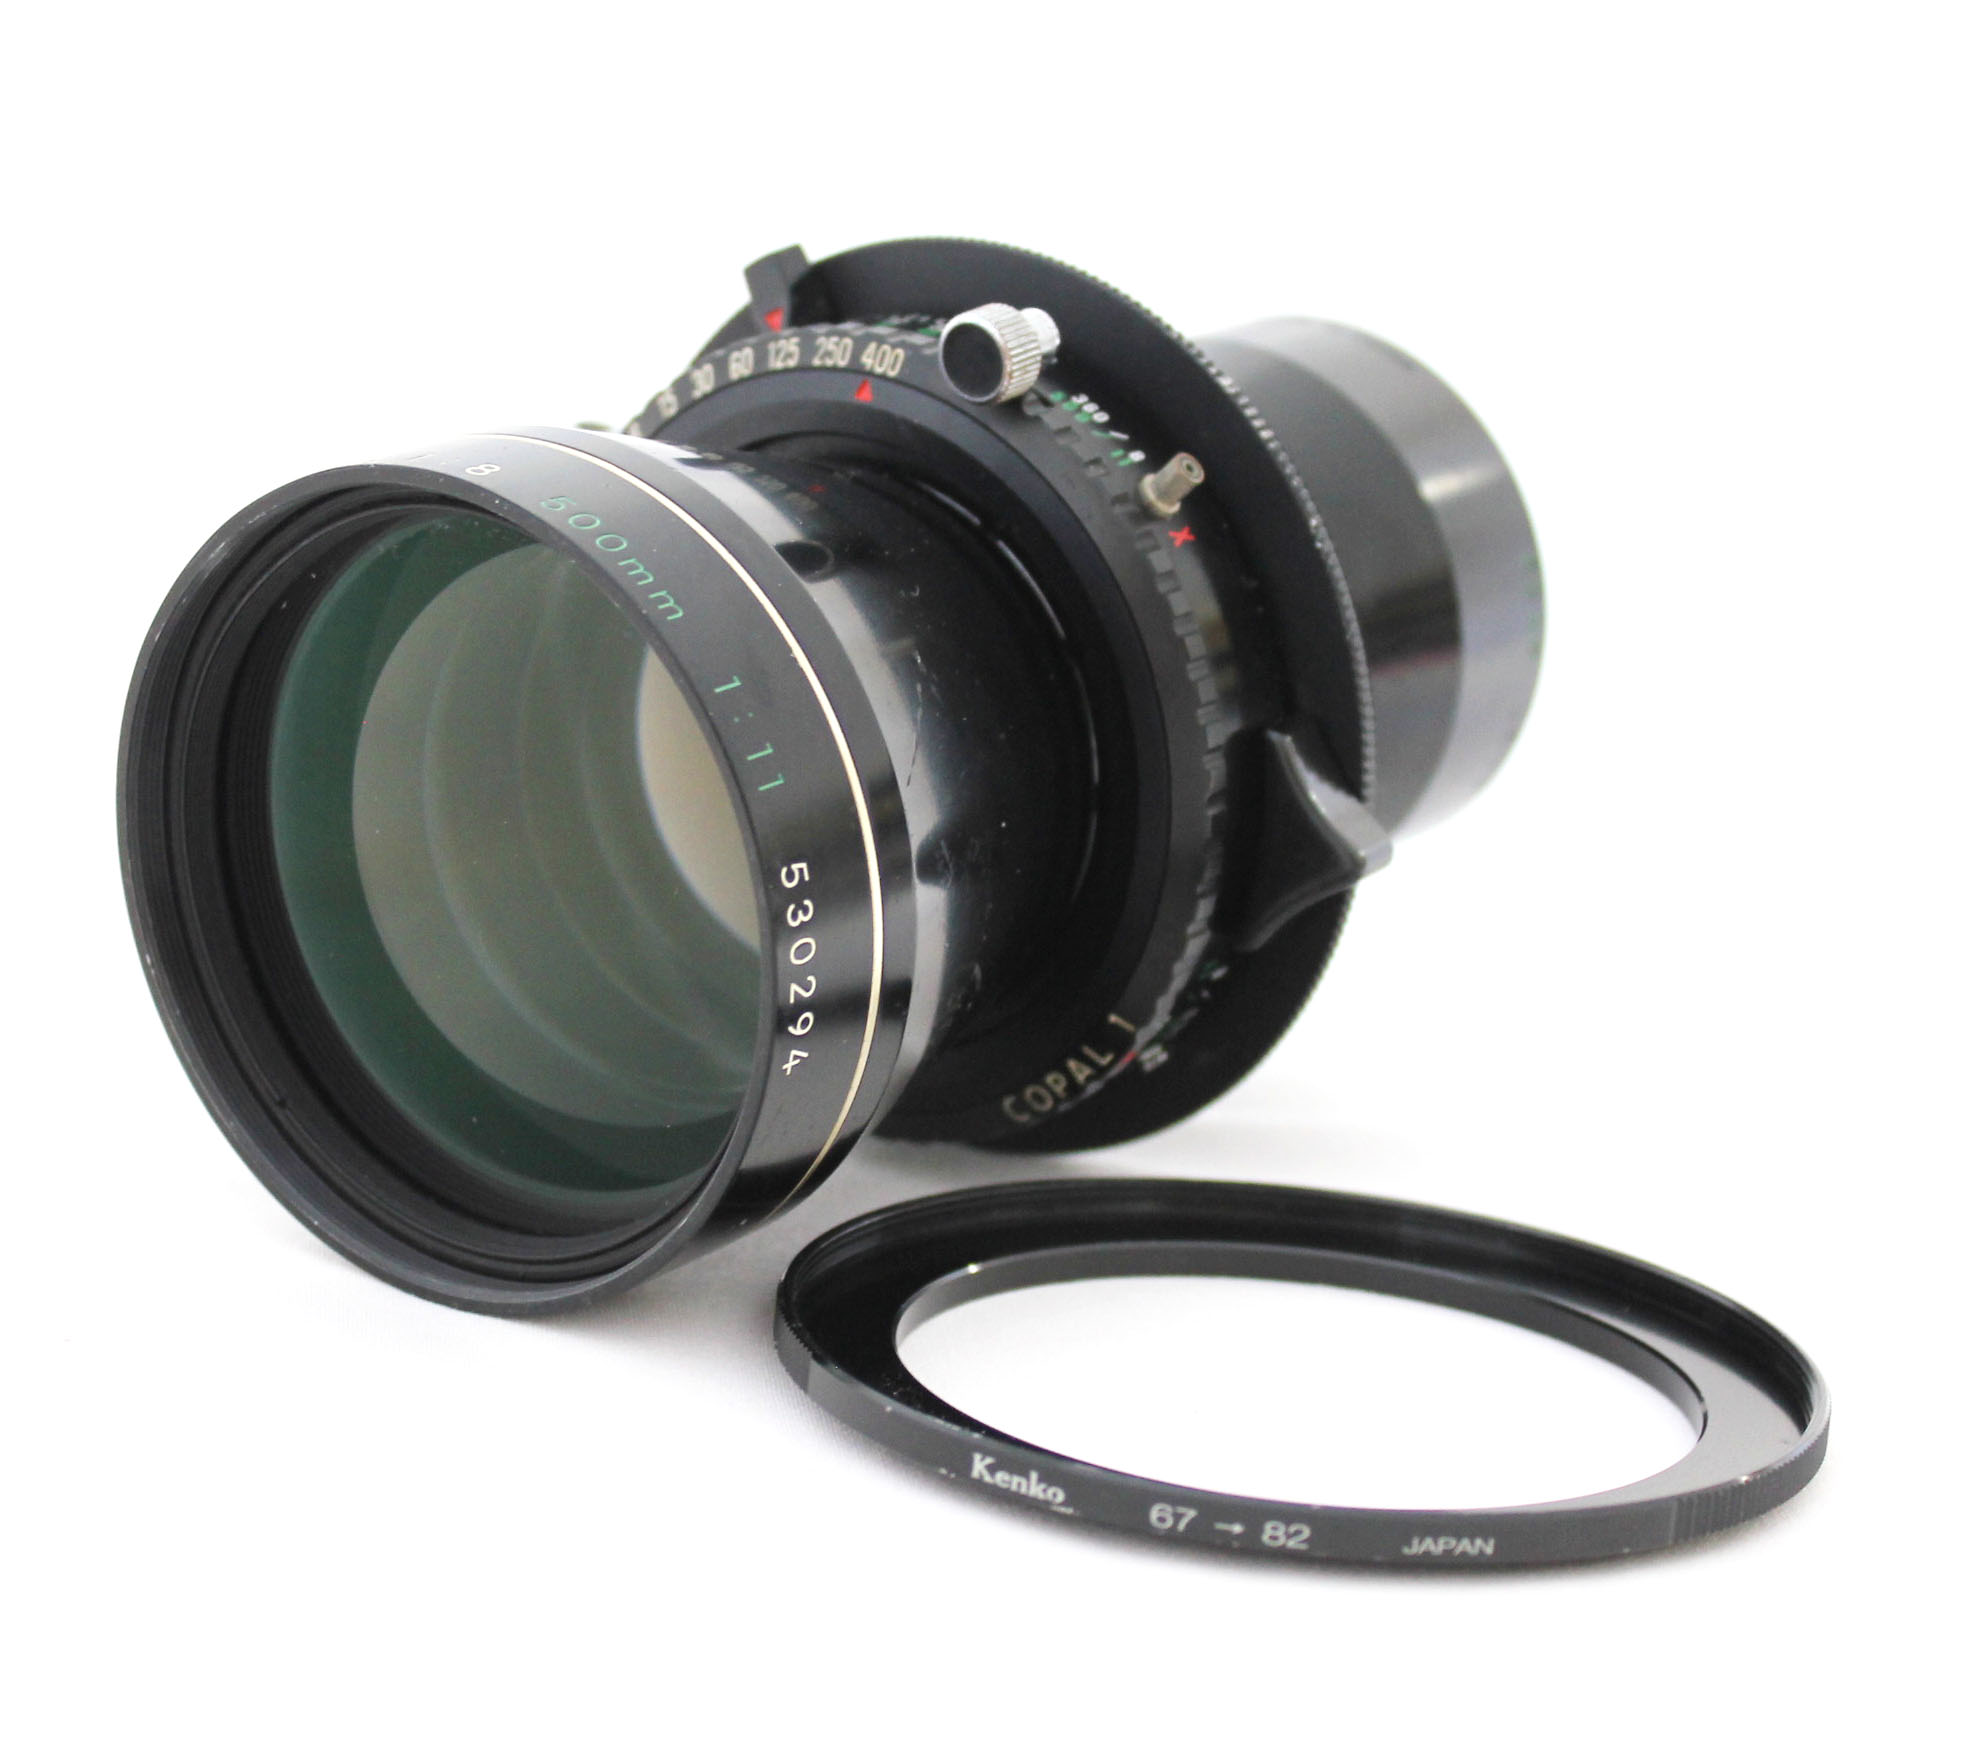 Nikkor-T* ED 500mm F/11 Large Format Lens Copal 1 Shutter from Japan